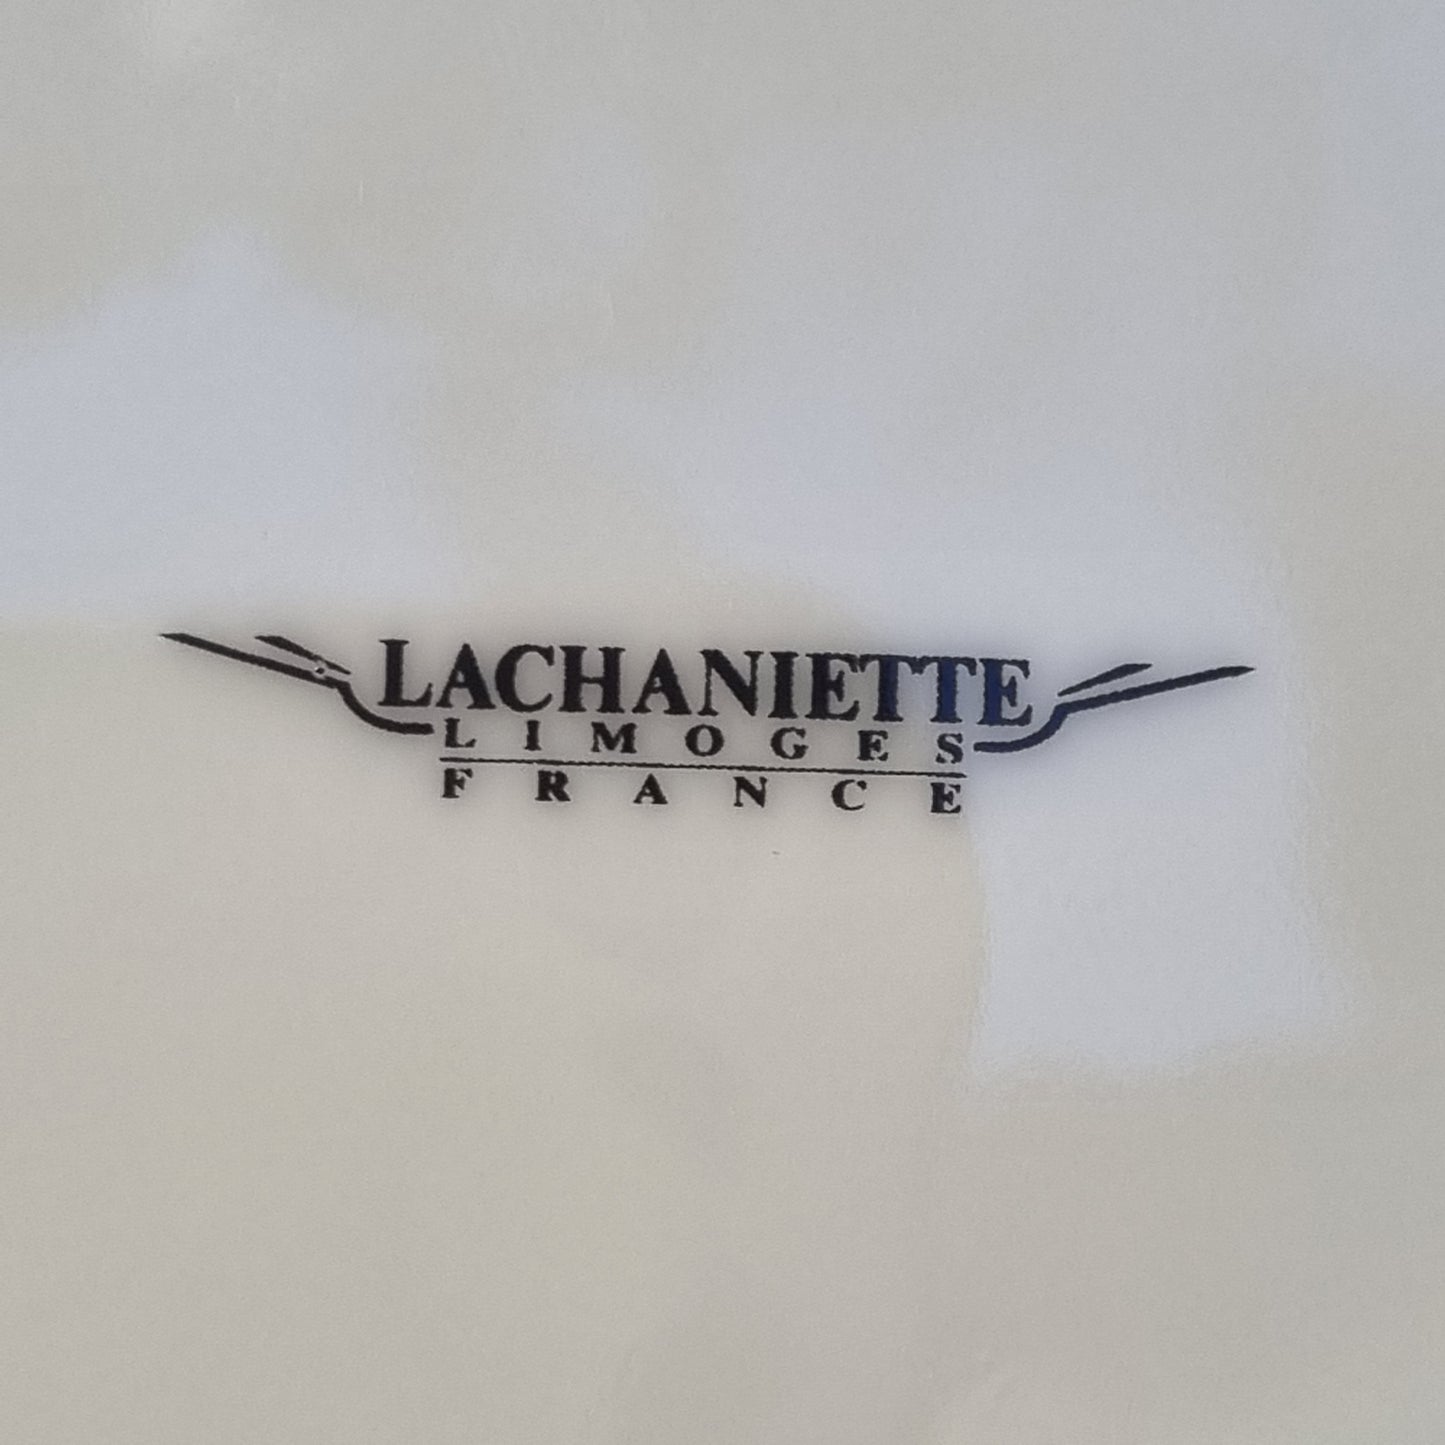 8 bajoplatos de porcelana de Limoges, Lachaniette